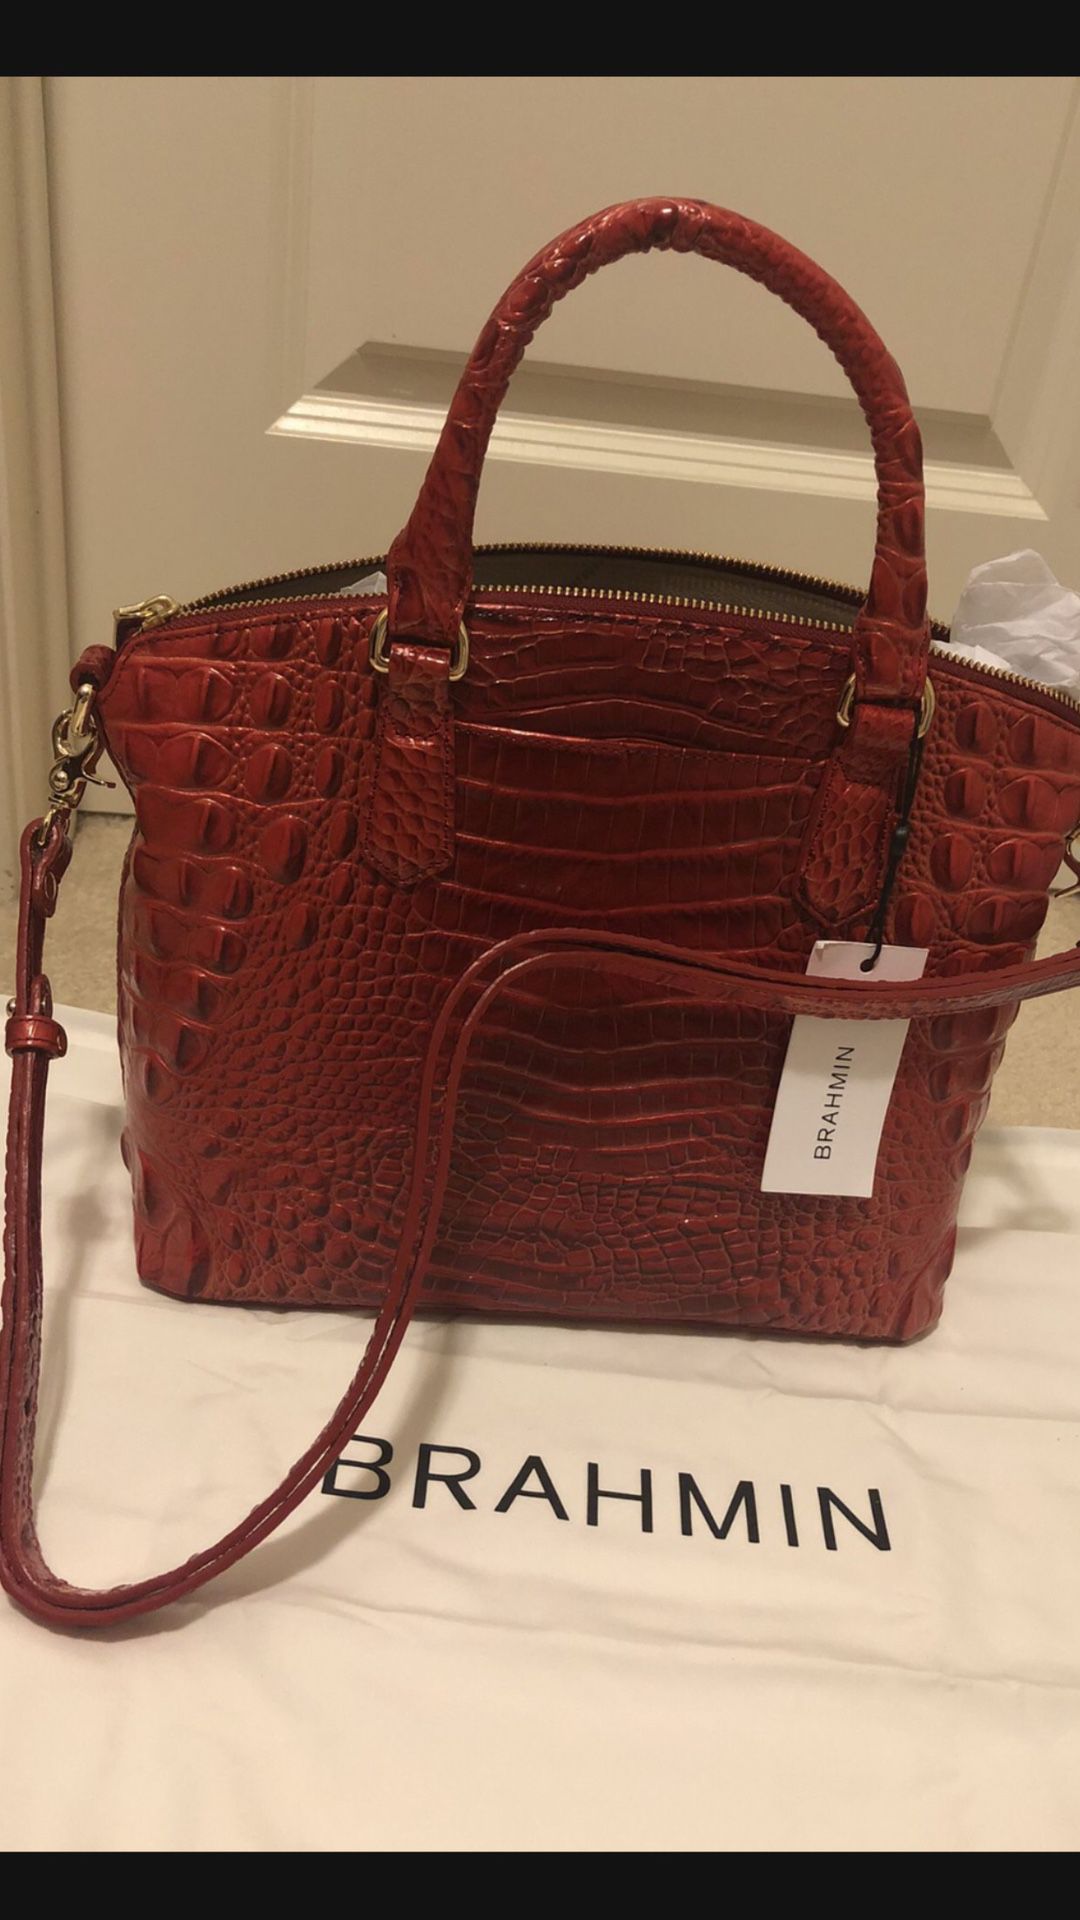 Brahmin Bag for Sale in Snellville, GA - OfferUp